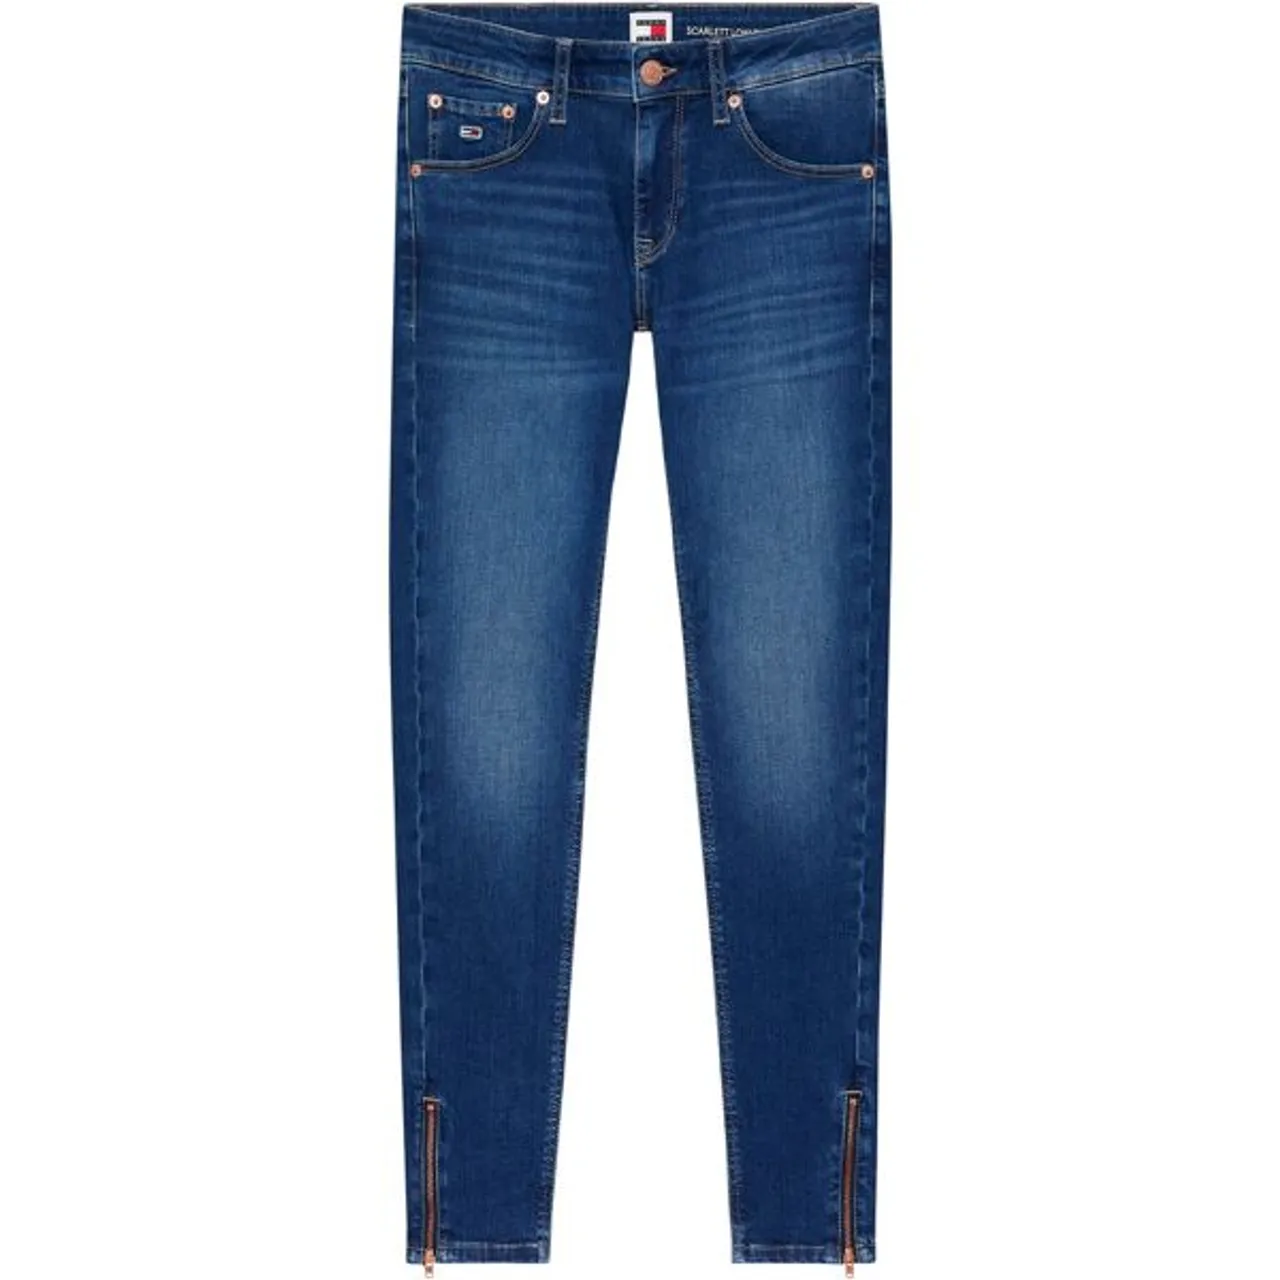 Skinny-fit-Jeans TOMMY JEANS "SCARLETT LW SKN ANK ZIP AH1239" Gr. 33, Länge 32, blau (denim_medium) Damen Jeans Röhrenjeans